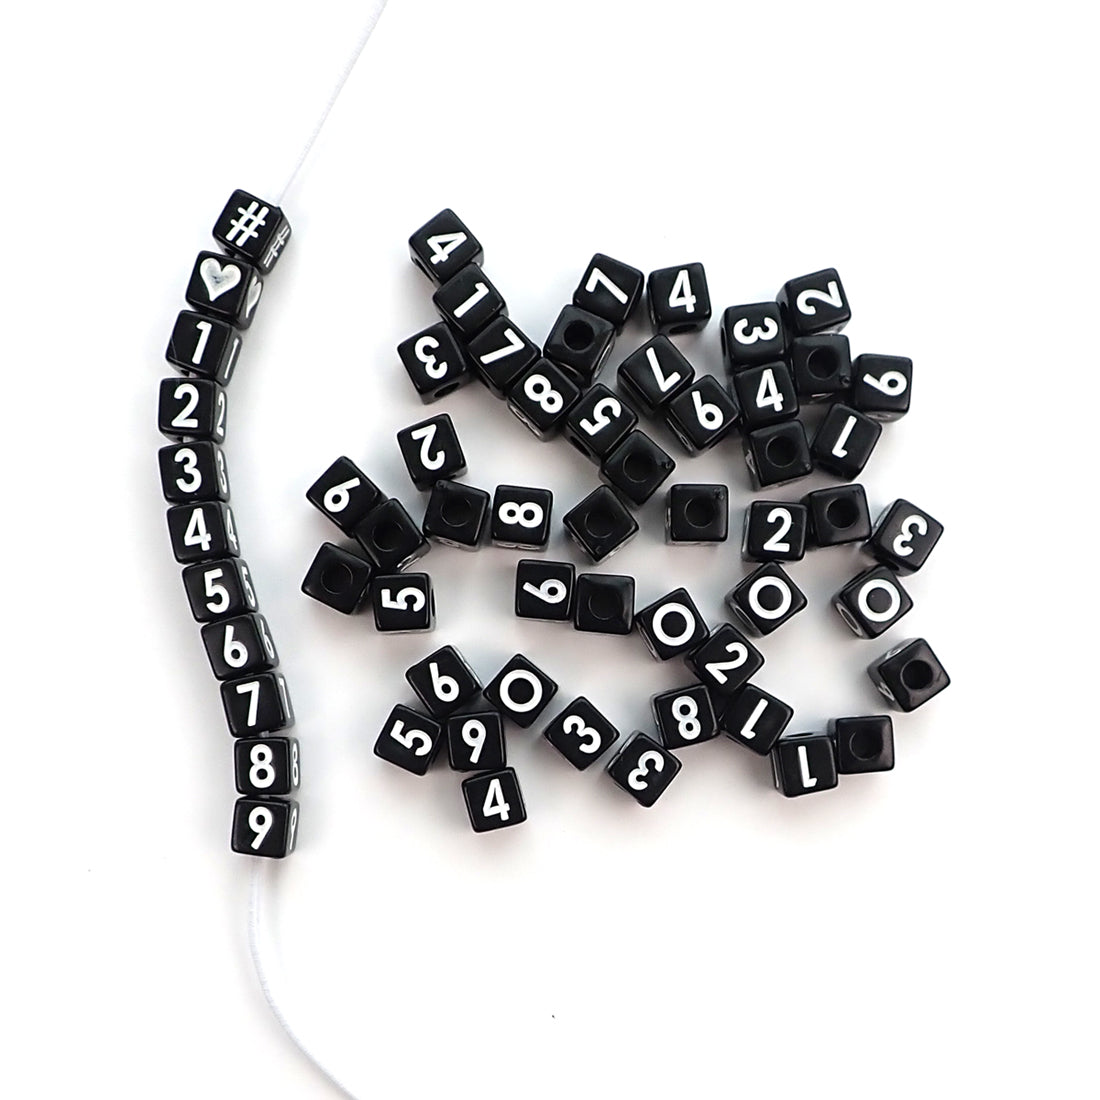 1690SV073BK – 10mm Number Beads – White / Black Letters – 1/4 Lb Value Pack